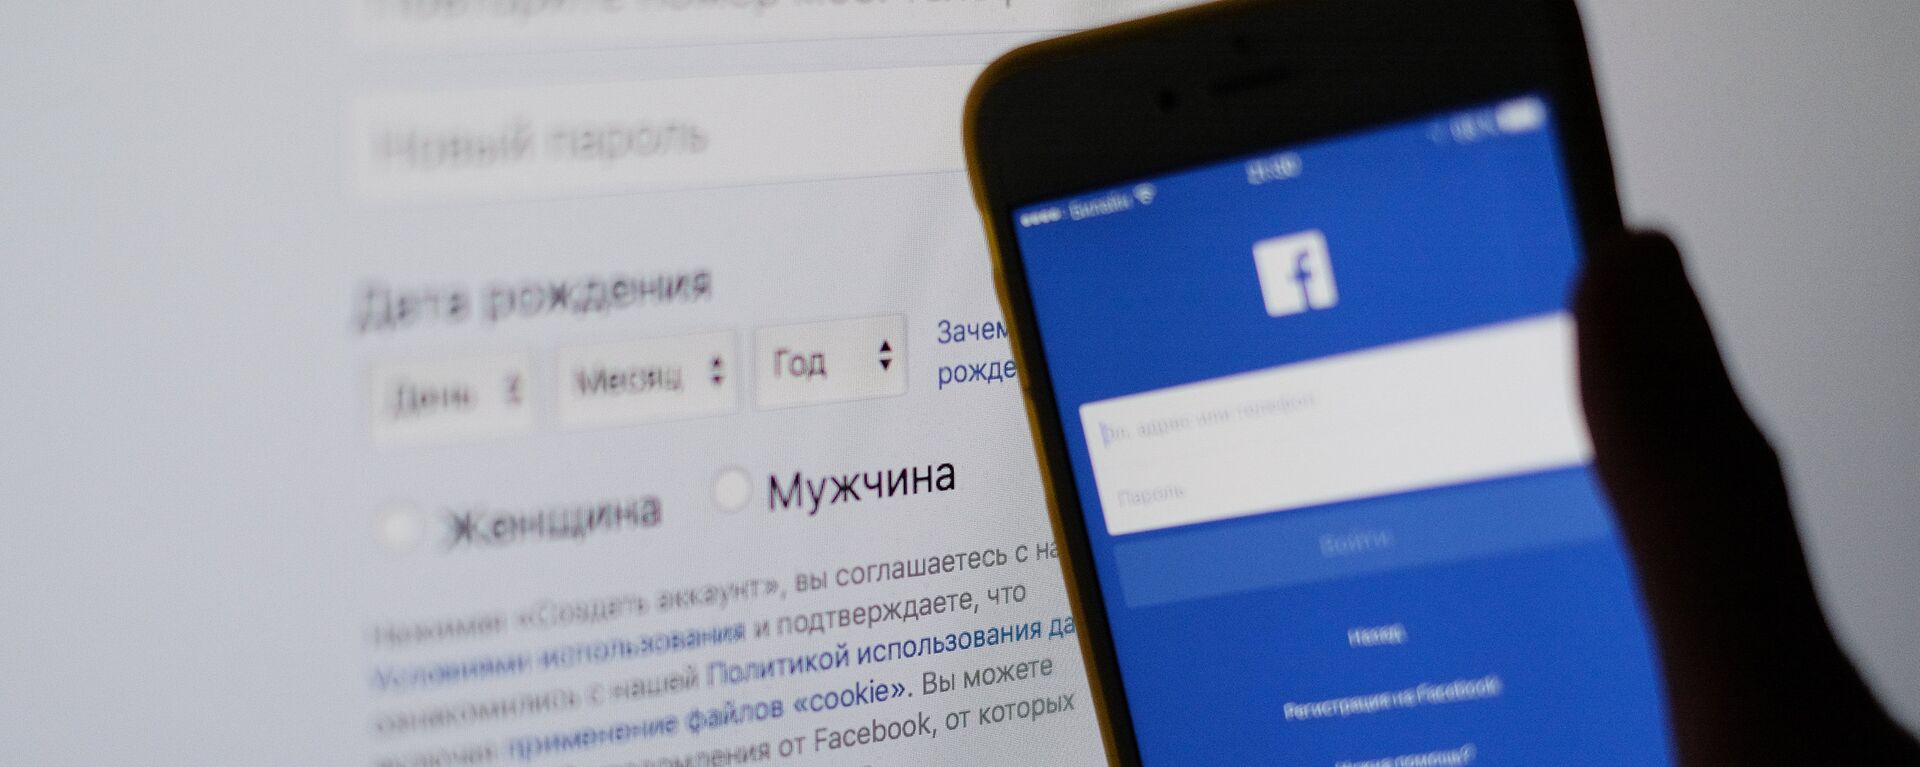 Социальная сеть Фейсбук - Sputnik Узбекистан, 1920, 04.04.2021